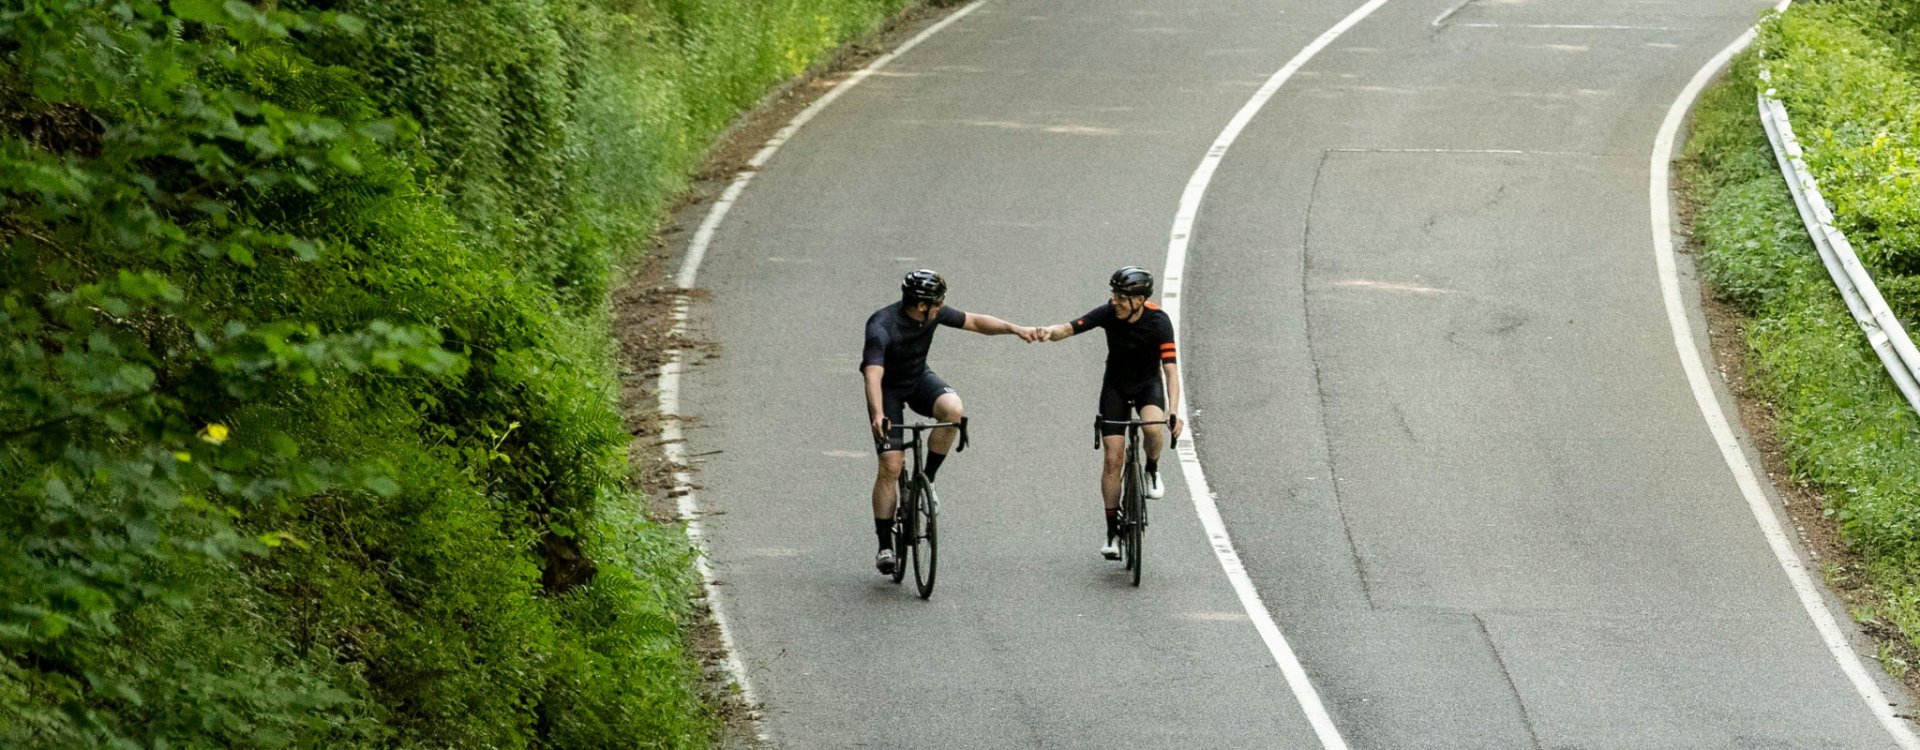 Deux coureurs cyclistes sur des vélos Specialized Tarmac SL7 se donnent un coup de poing approbateur après avoir surmonté une côte.